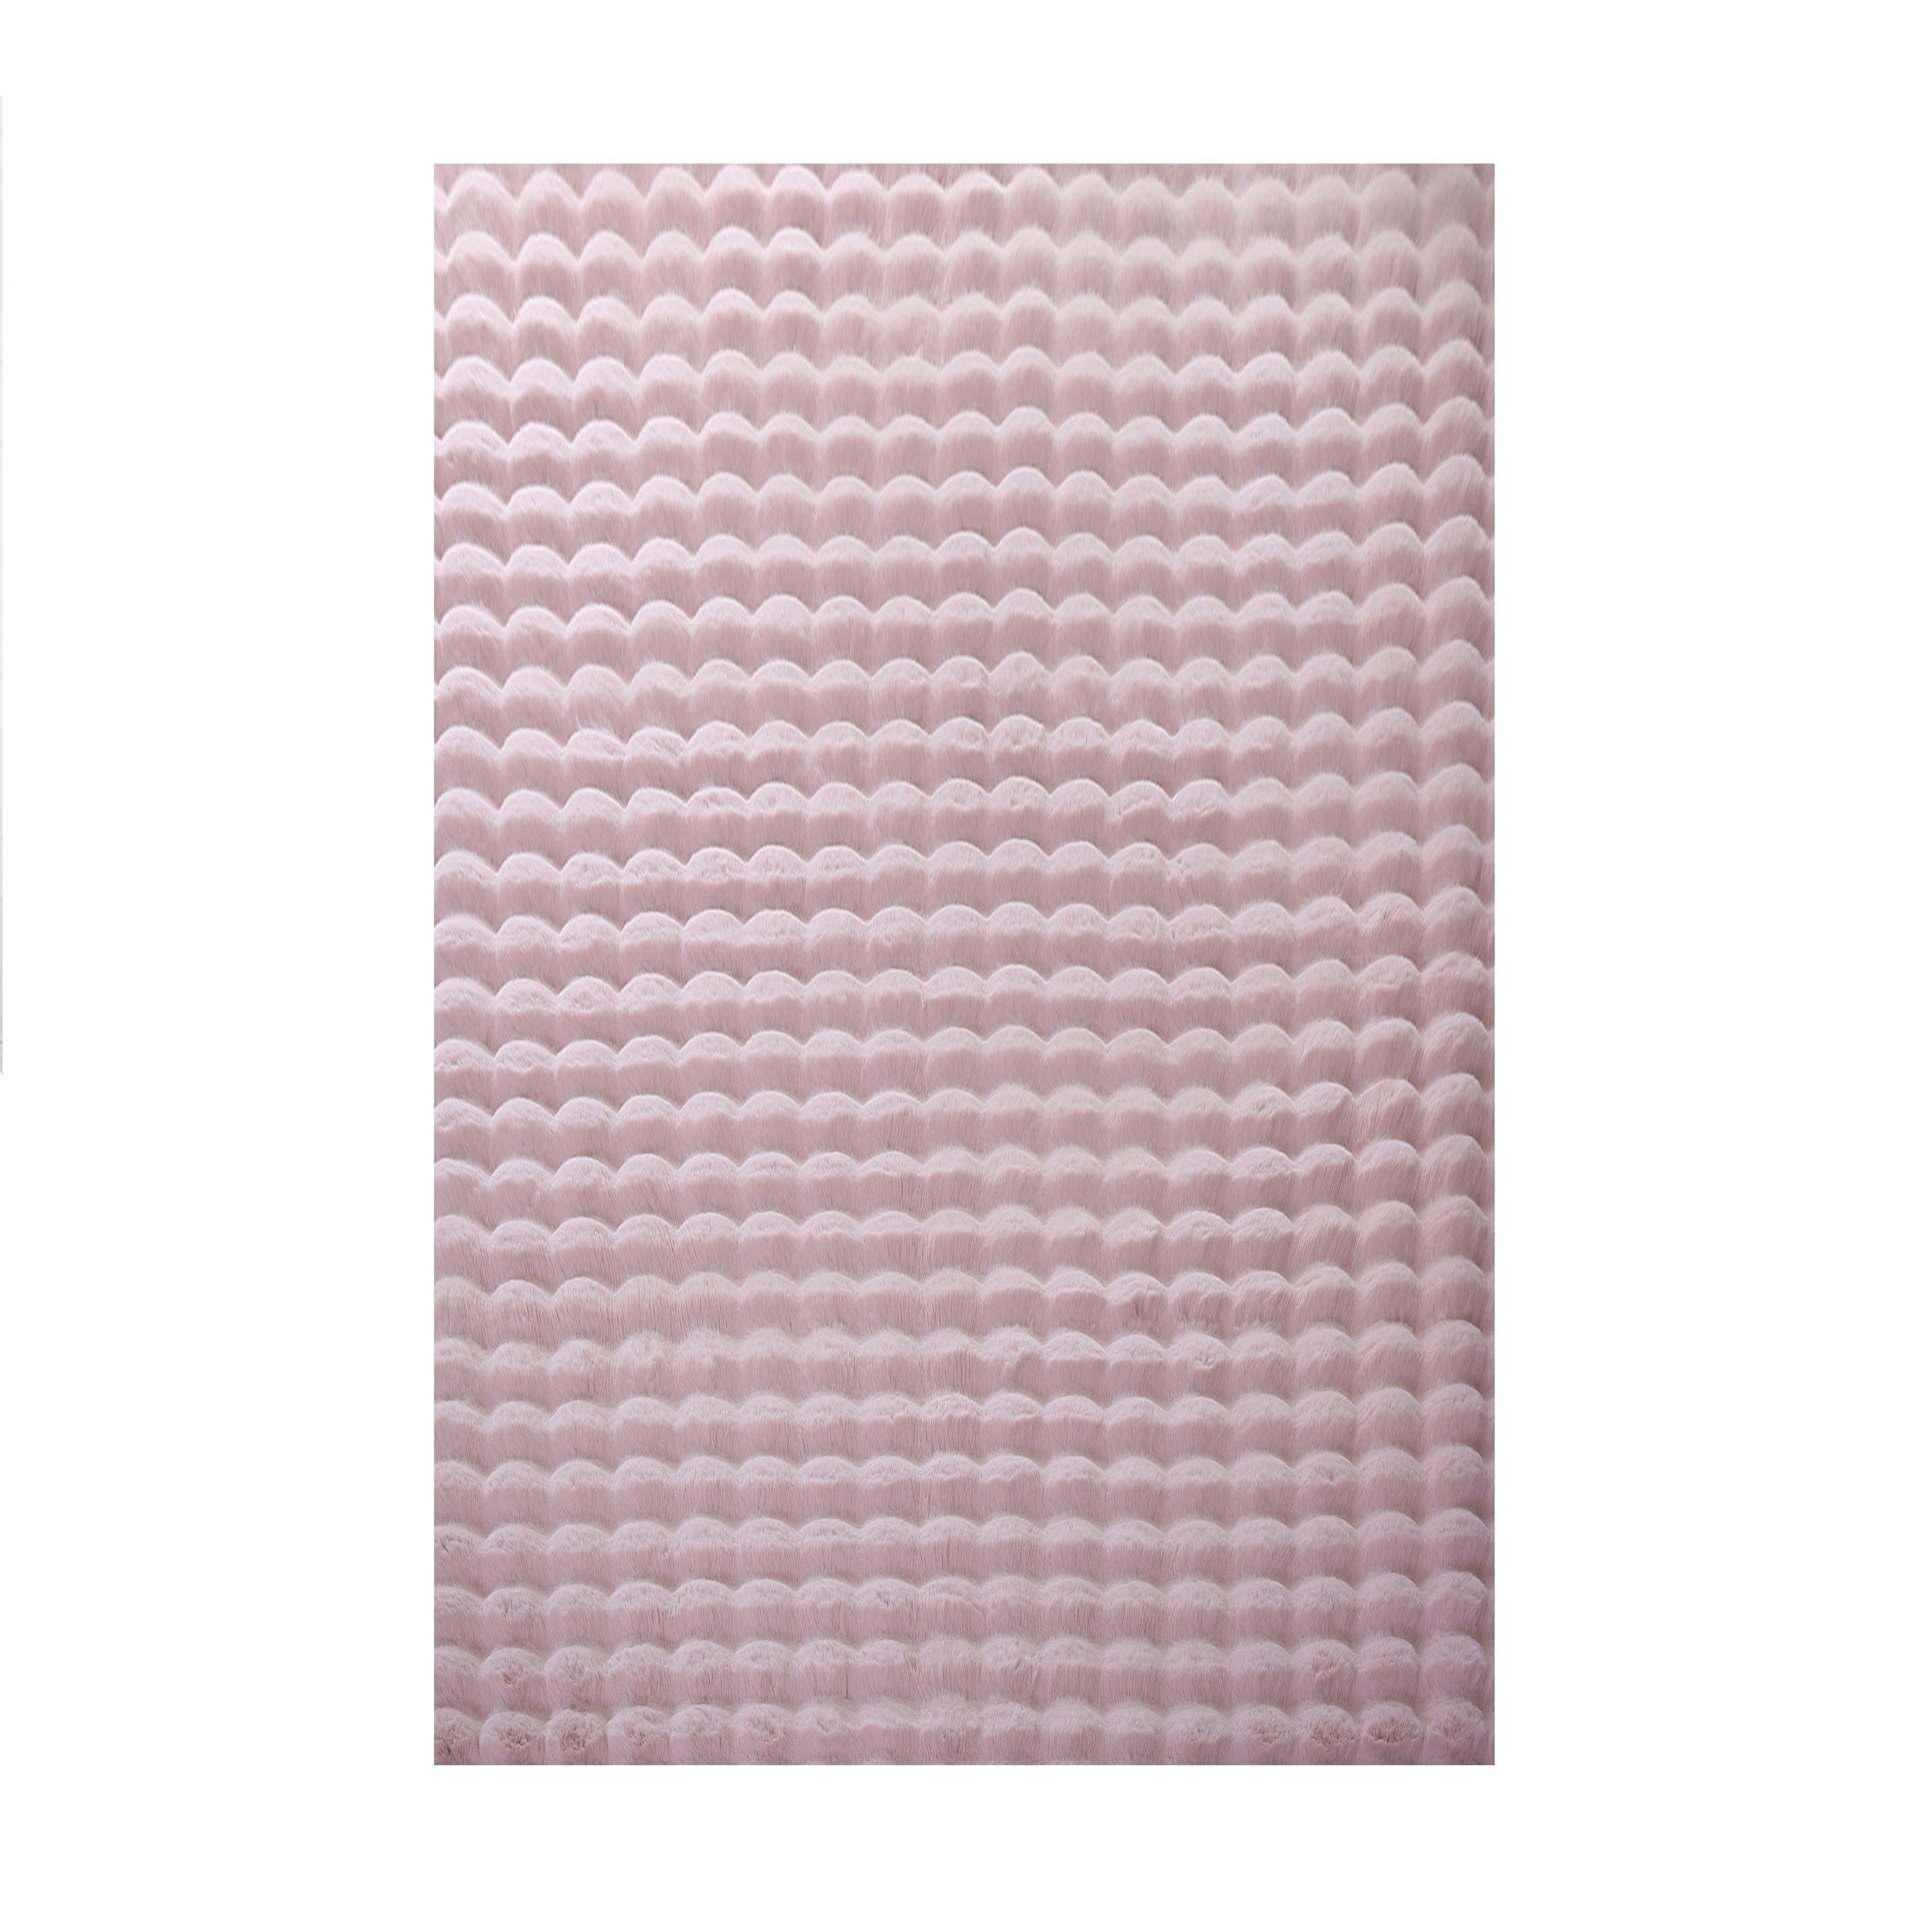 Teppich Unicolor - Einfarbig, Teppium, Rechteckig, Höhe: 25 mm, Teppich Wohnzimmer Soft Einfarbig 3D Optik flauschig Plüsch Teppich